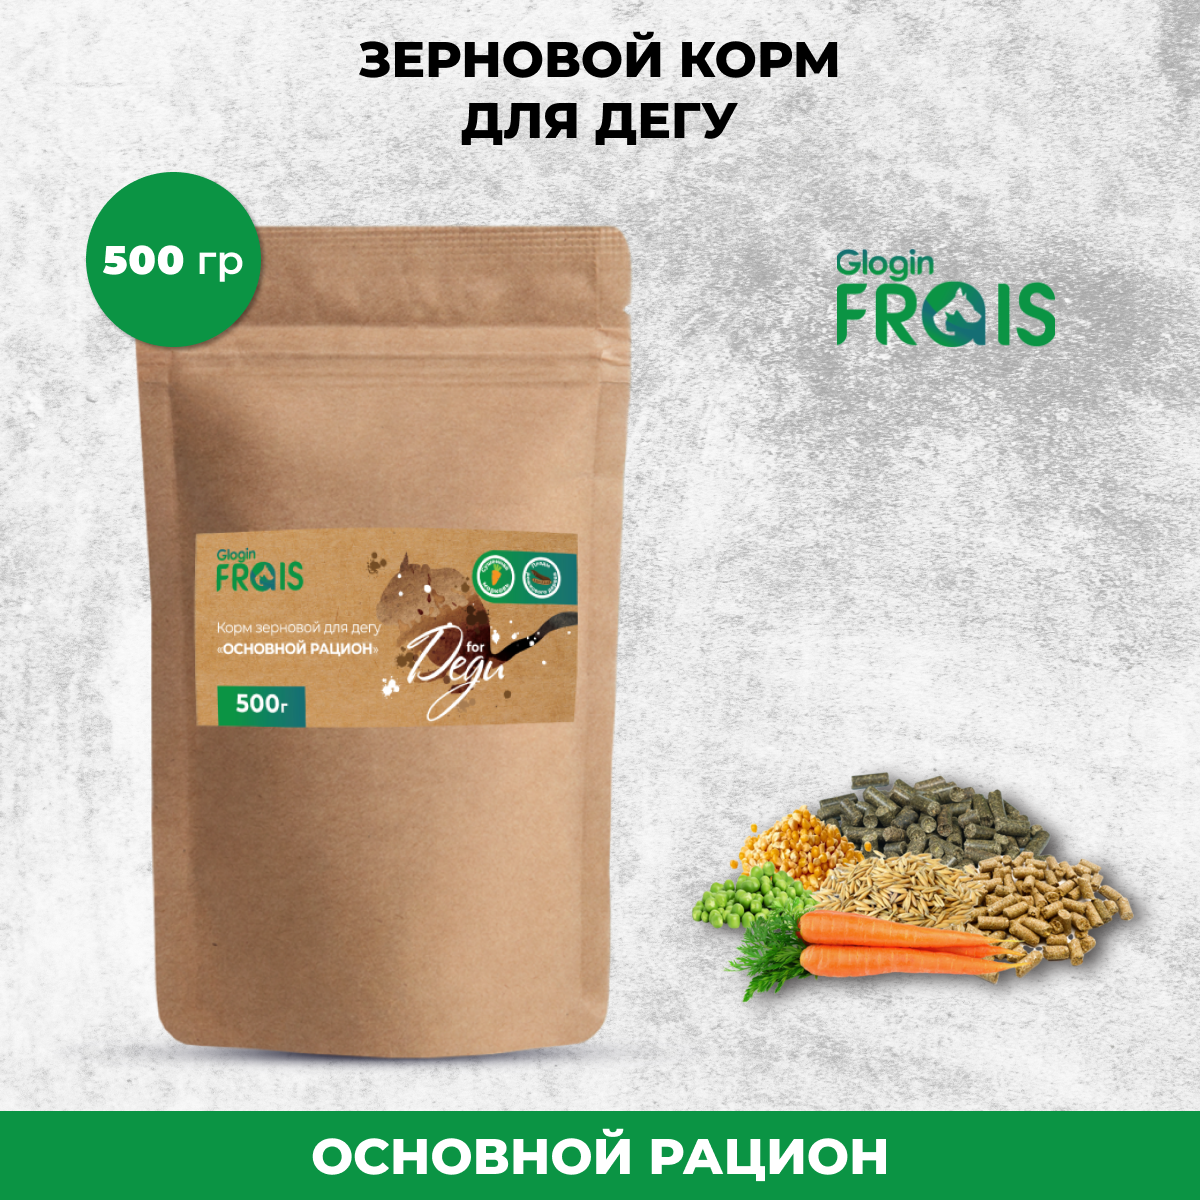 Сухой корм для дегу Glogin FRAIS Основной рацион, зерновой, 500 г